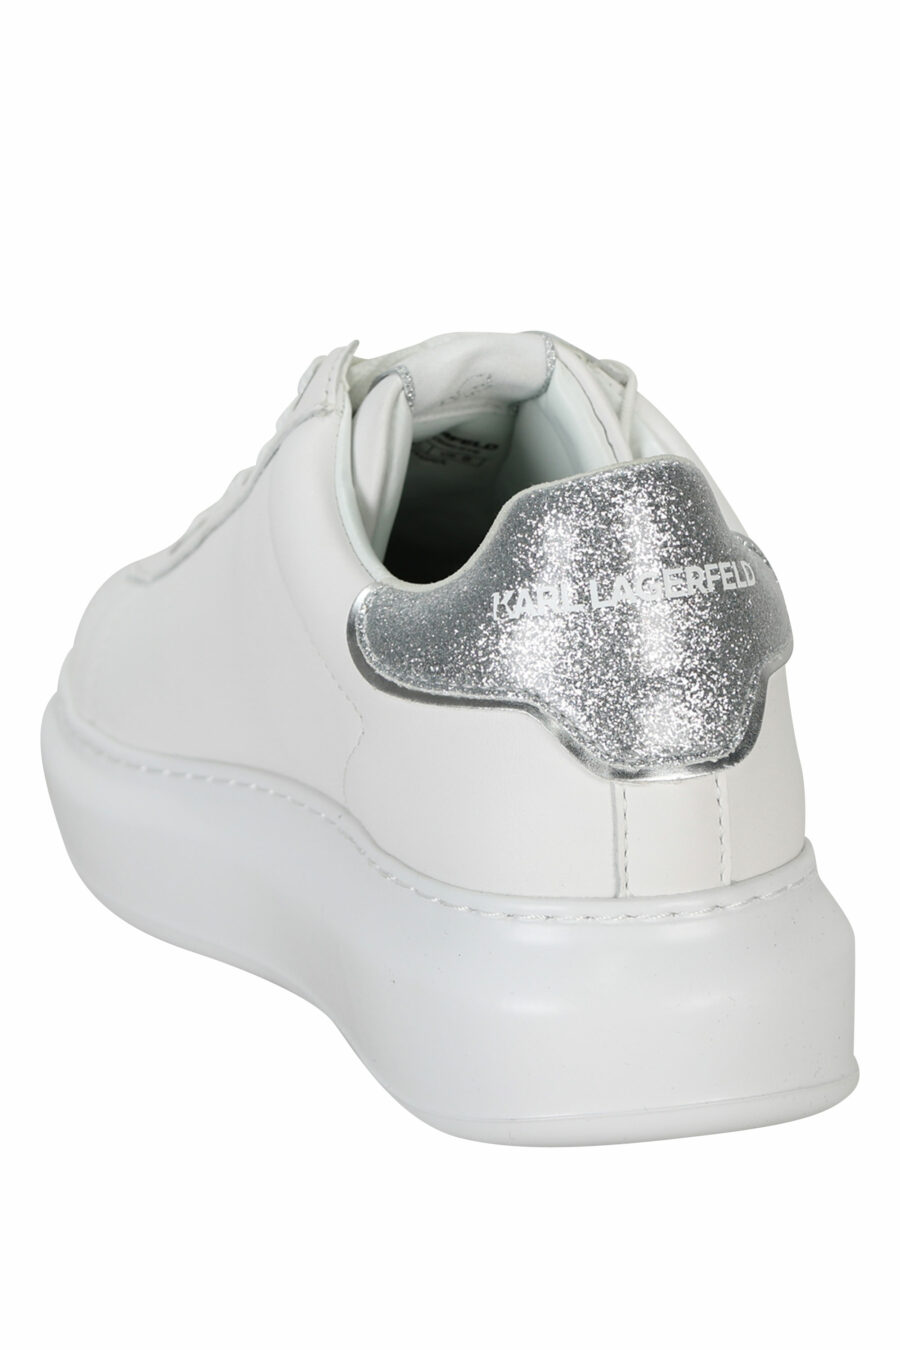 Baskets "Kapri" blanches avec logo en caoutchouc et détails argentés brillants - 5059529351174 3